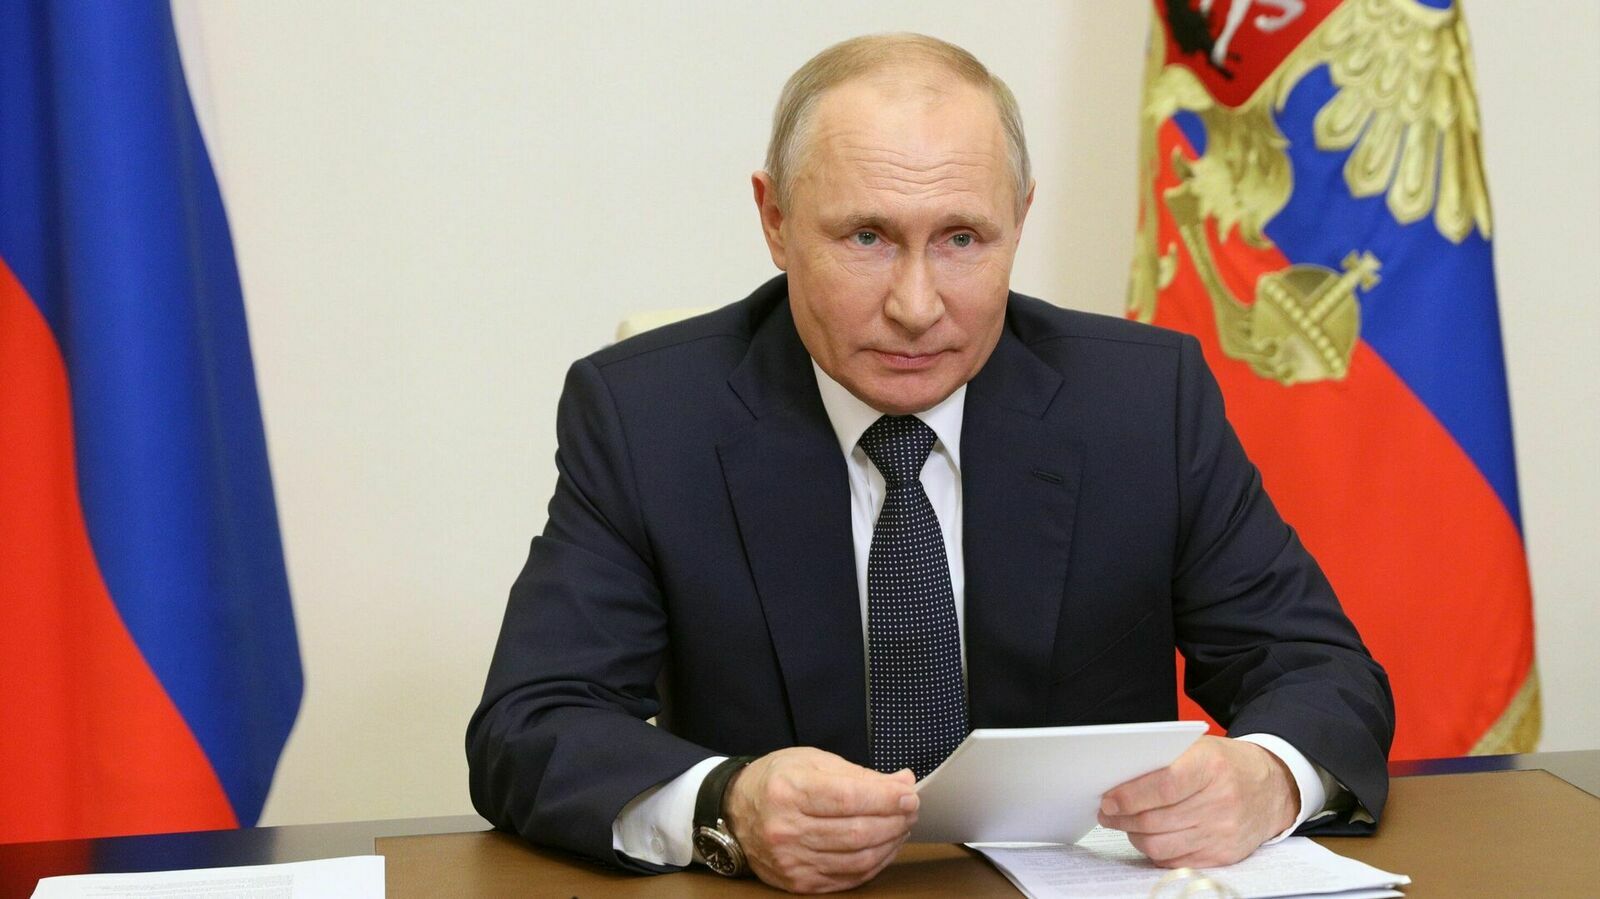 Путин поздравил коллектив "Строительной газеты" со 100-летием со дня выхода первого номера